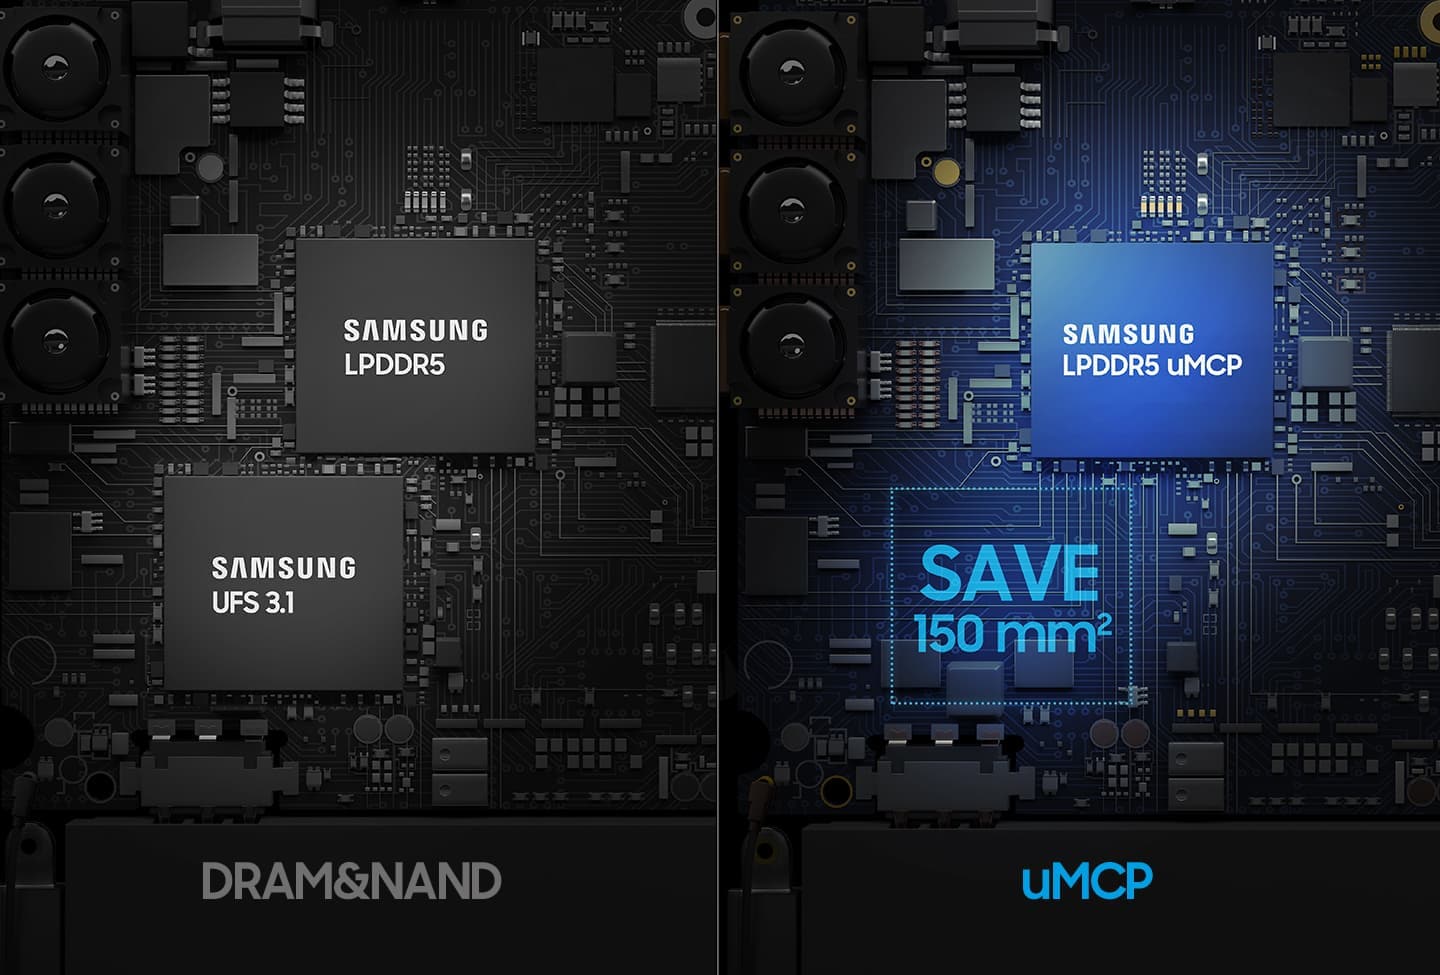 左側にはLPDDR5とUFS3.1の製品、右側にはSAMSUNG LPDDR5 uMCPの製品が配置され、そのスペースのサイズを比較するイメージです。